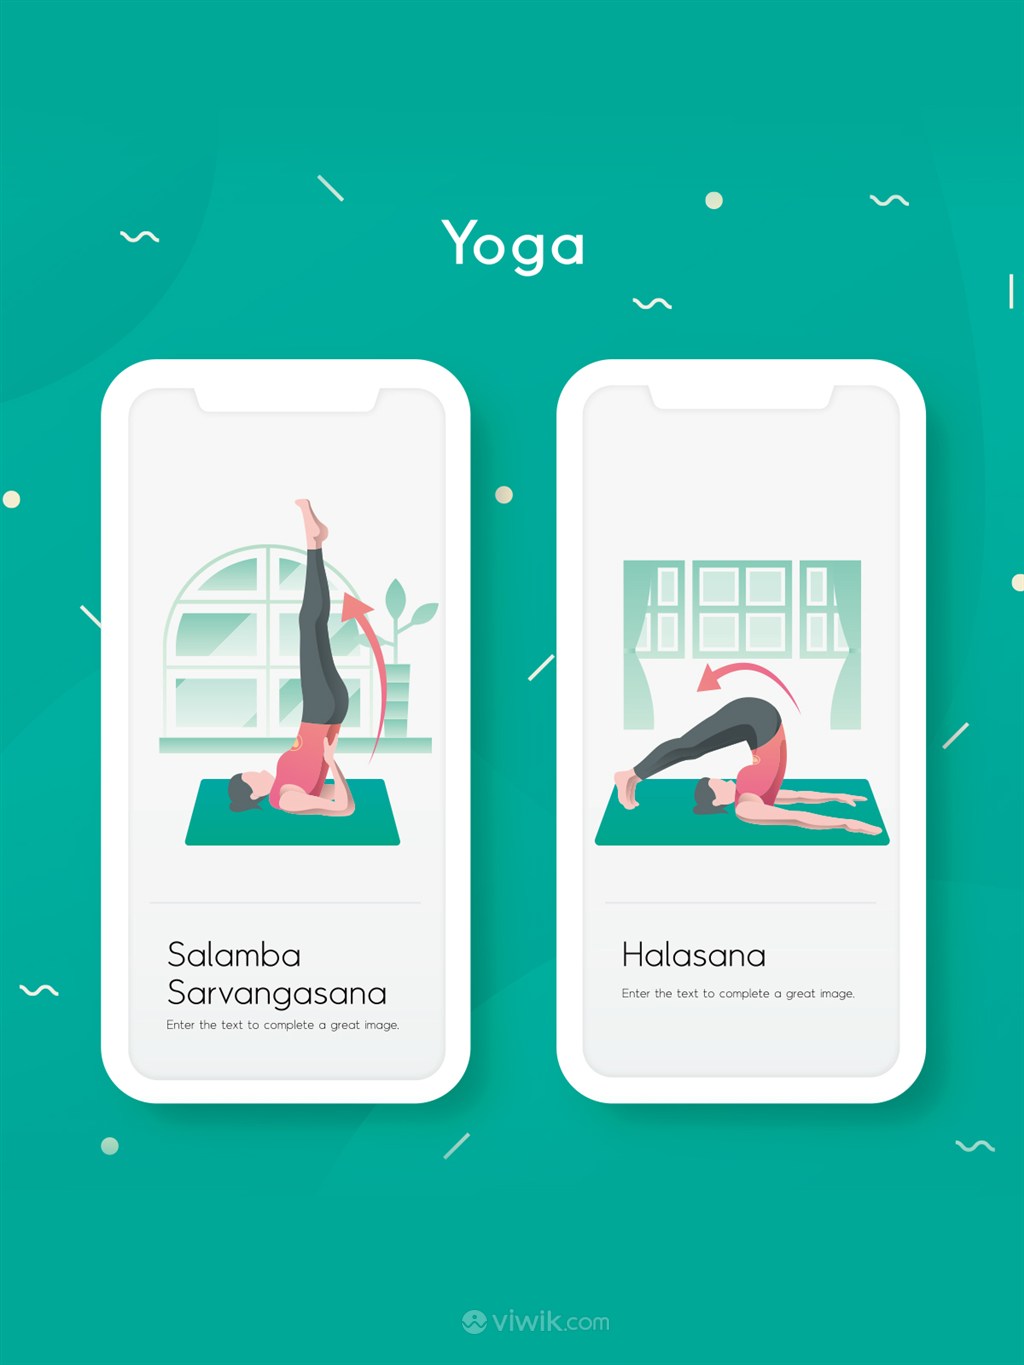 瑜伽运动倒立插图页面AI设计素材